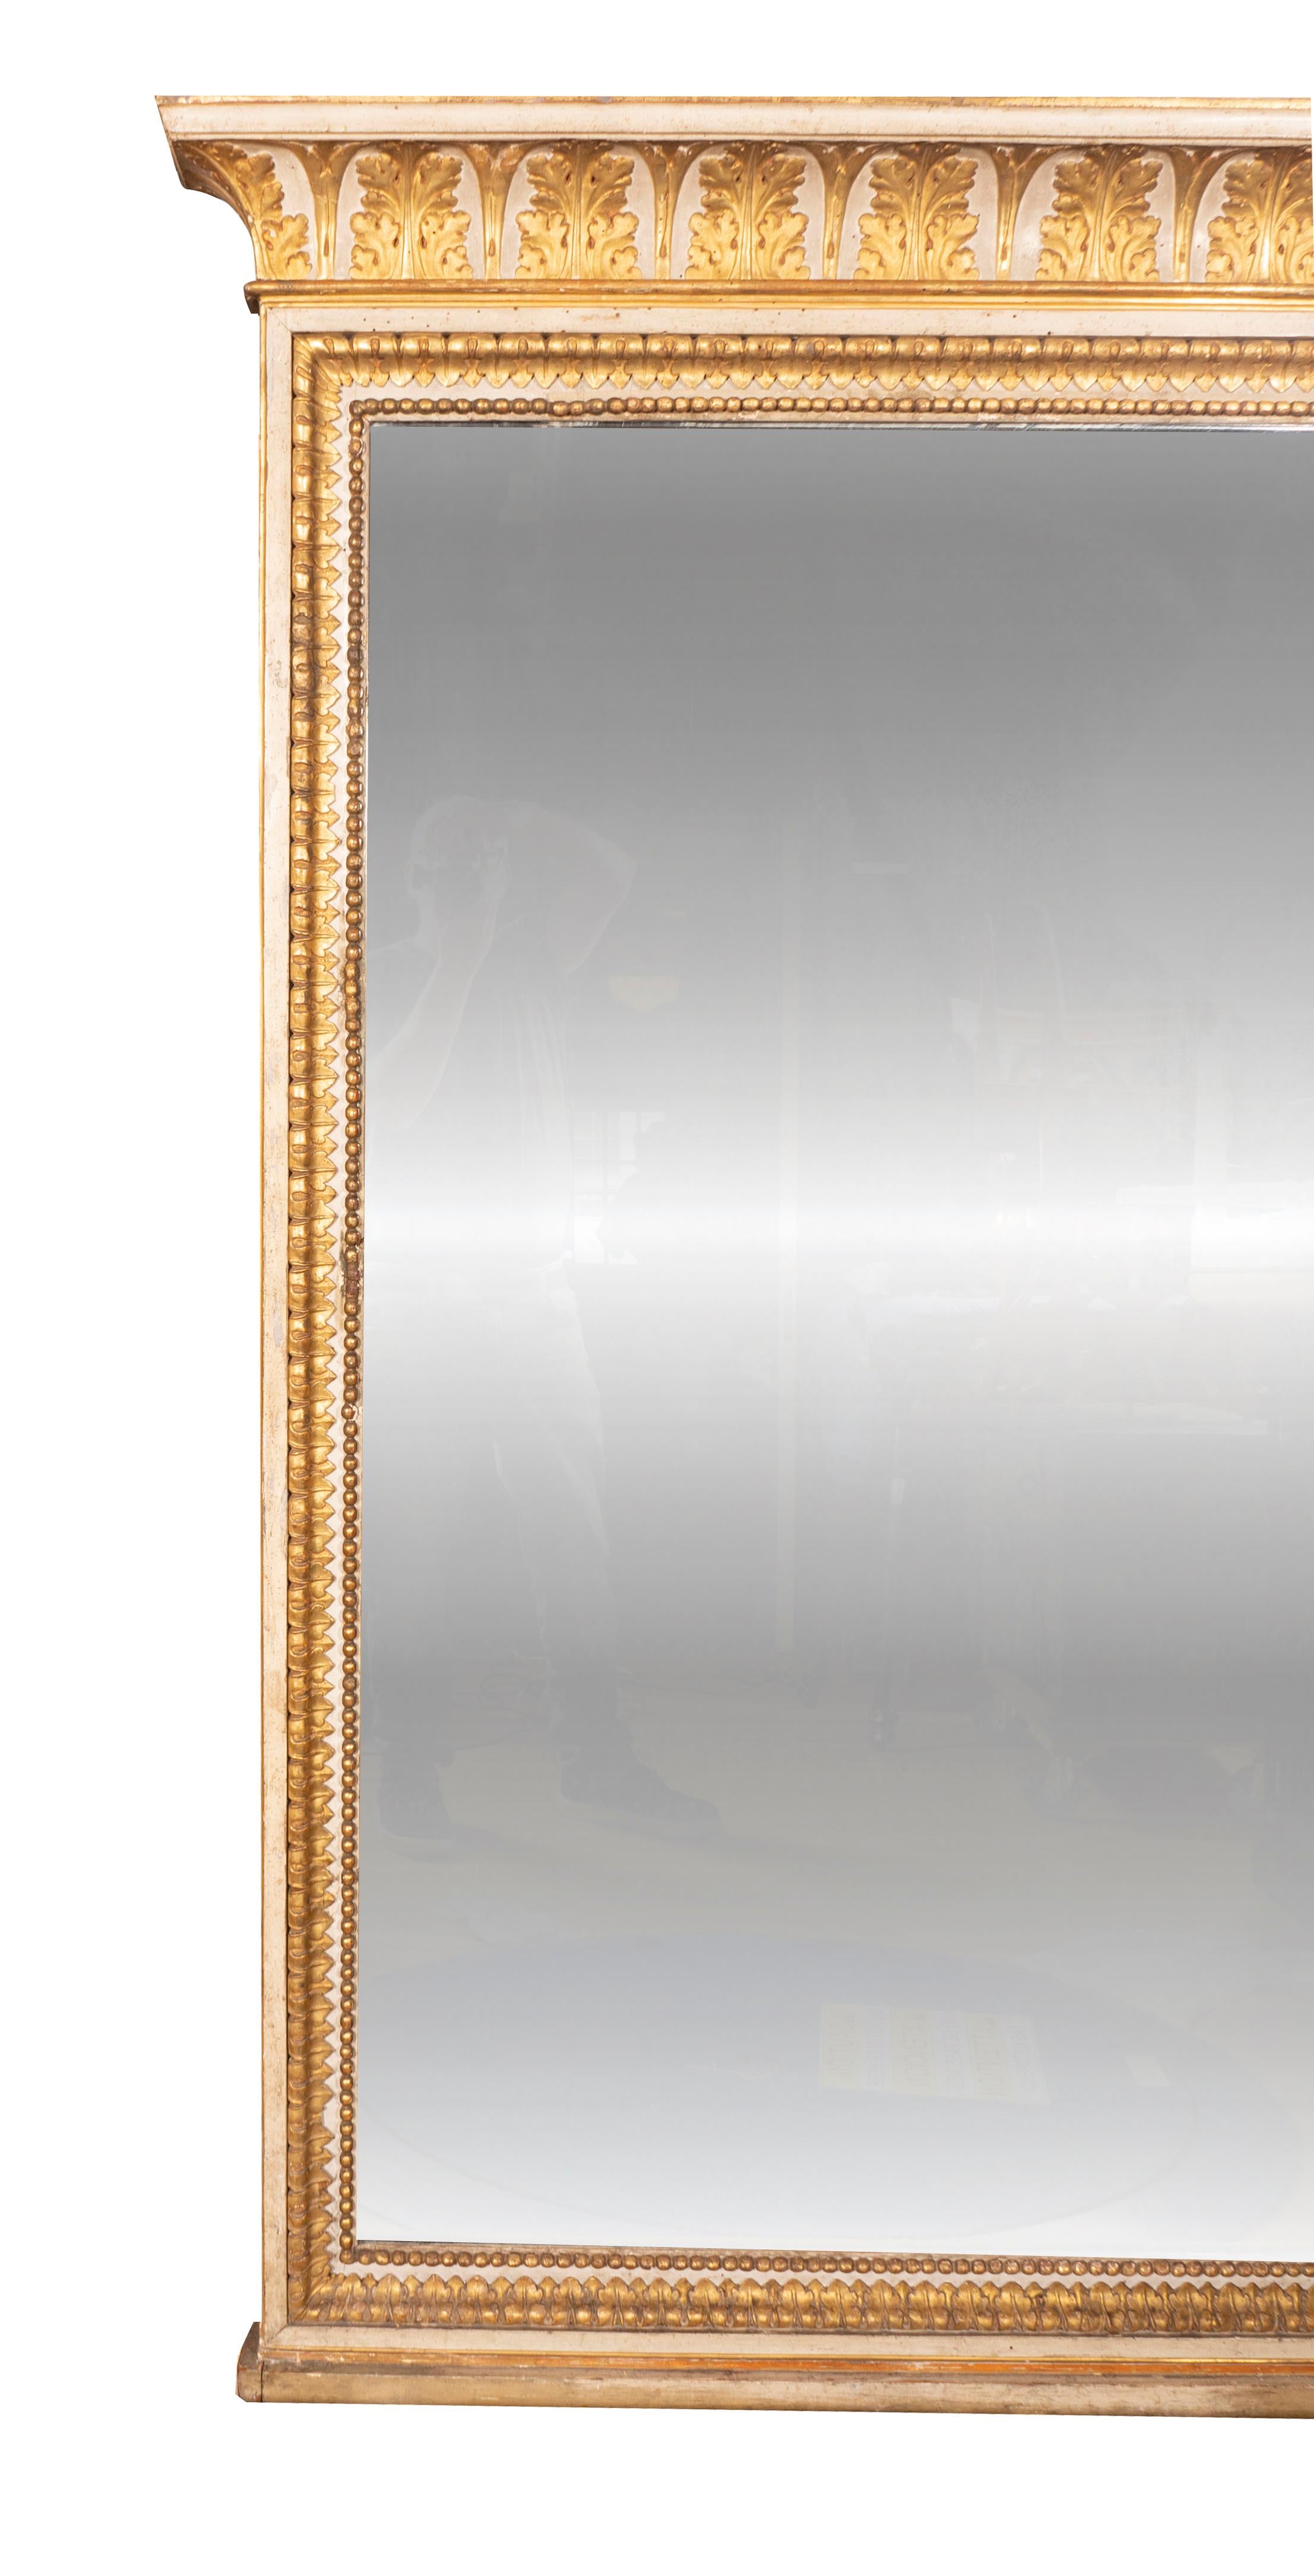 Das geformte Gesims mit vergoldeten Akanthusblättern in Bögen über einem rechteckigen Spiegel in einem Rahmen mit geschnitzten Blattspitzen und Perlen. Vor Bunny Williams Installation in Florida.